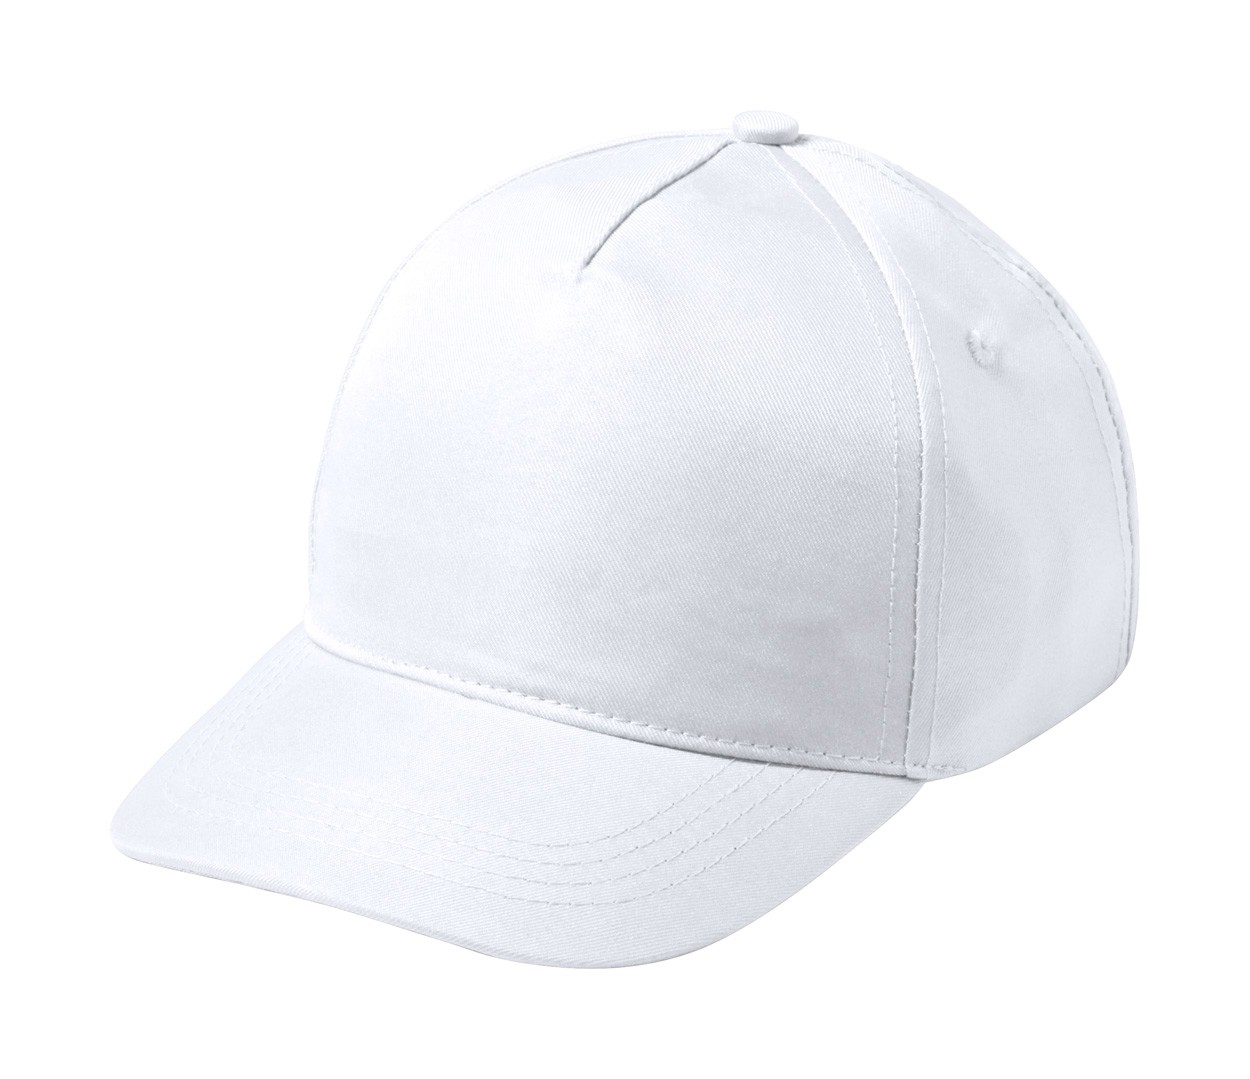 Baseball Cap For Kids Modiak - White